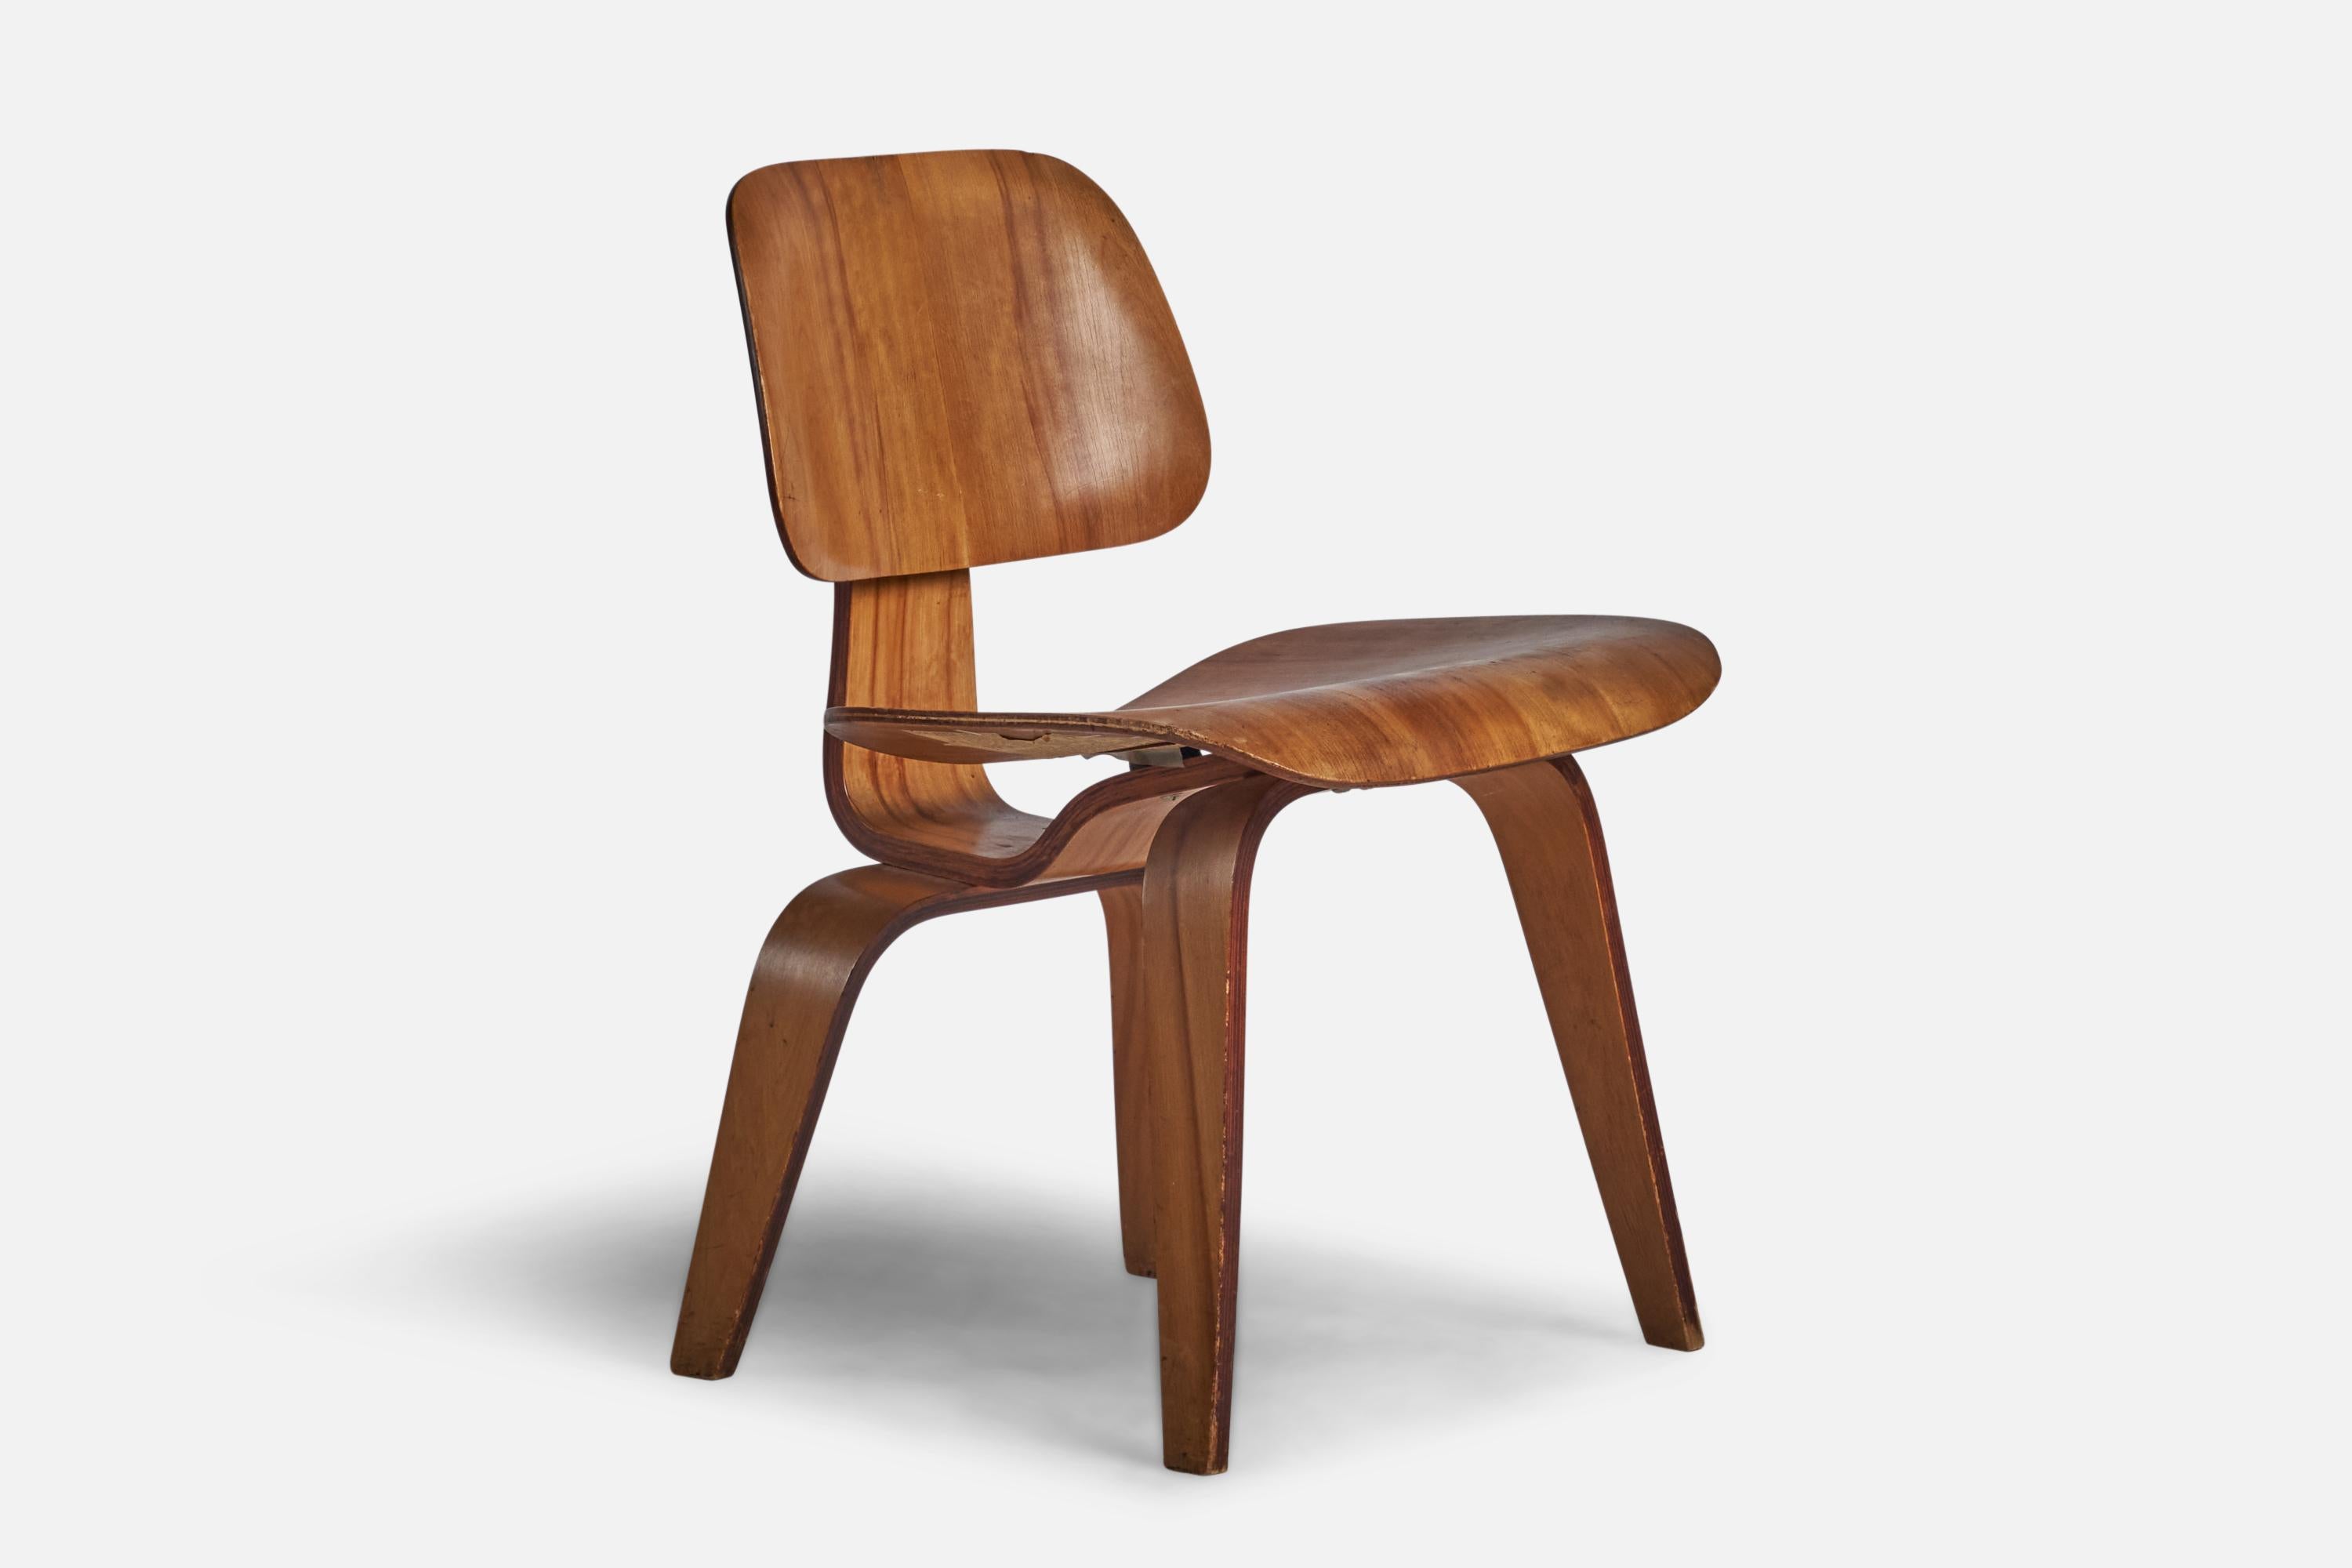 
Esstischstuhl oder Beistellstuhl aus Formsperrholz DCW, entworfen von Charles und Ray Eames und hergestellt von Herman Miller, USA, 1960er Jahre.
16,6